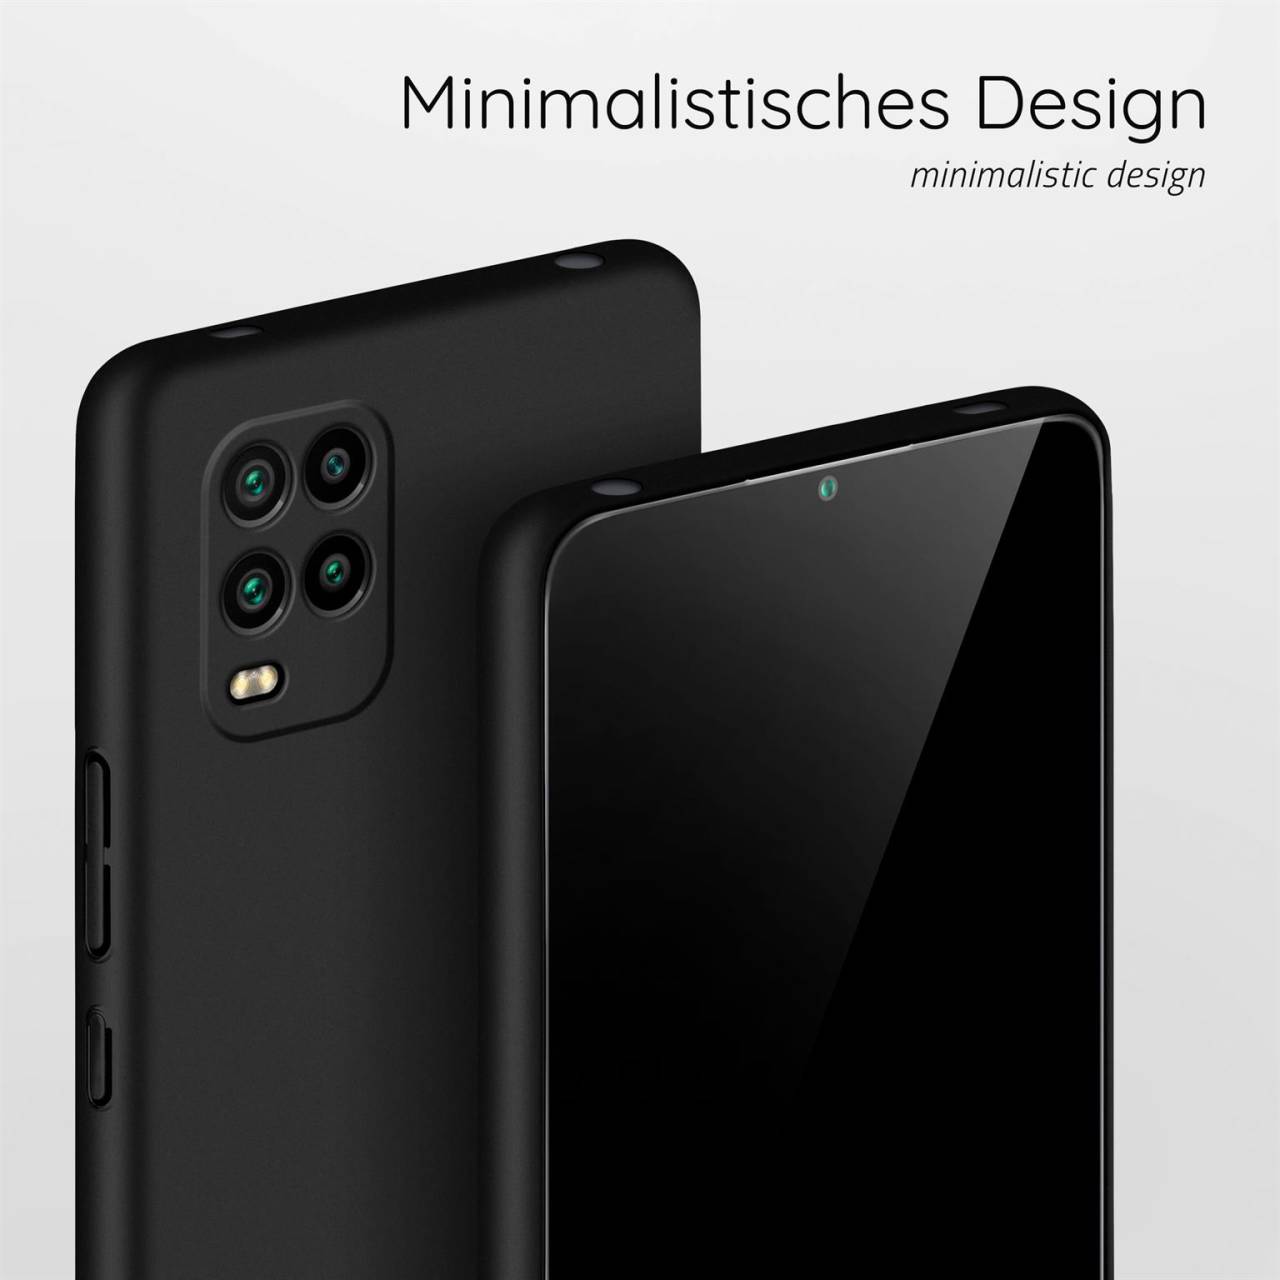 moex Alpha Case für Xiaomi Mi 10 Lite 5G – Extrem dünne, minimalistische Hülle in seidenmatt